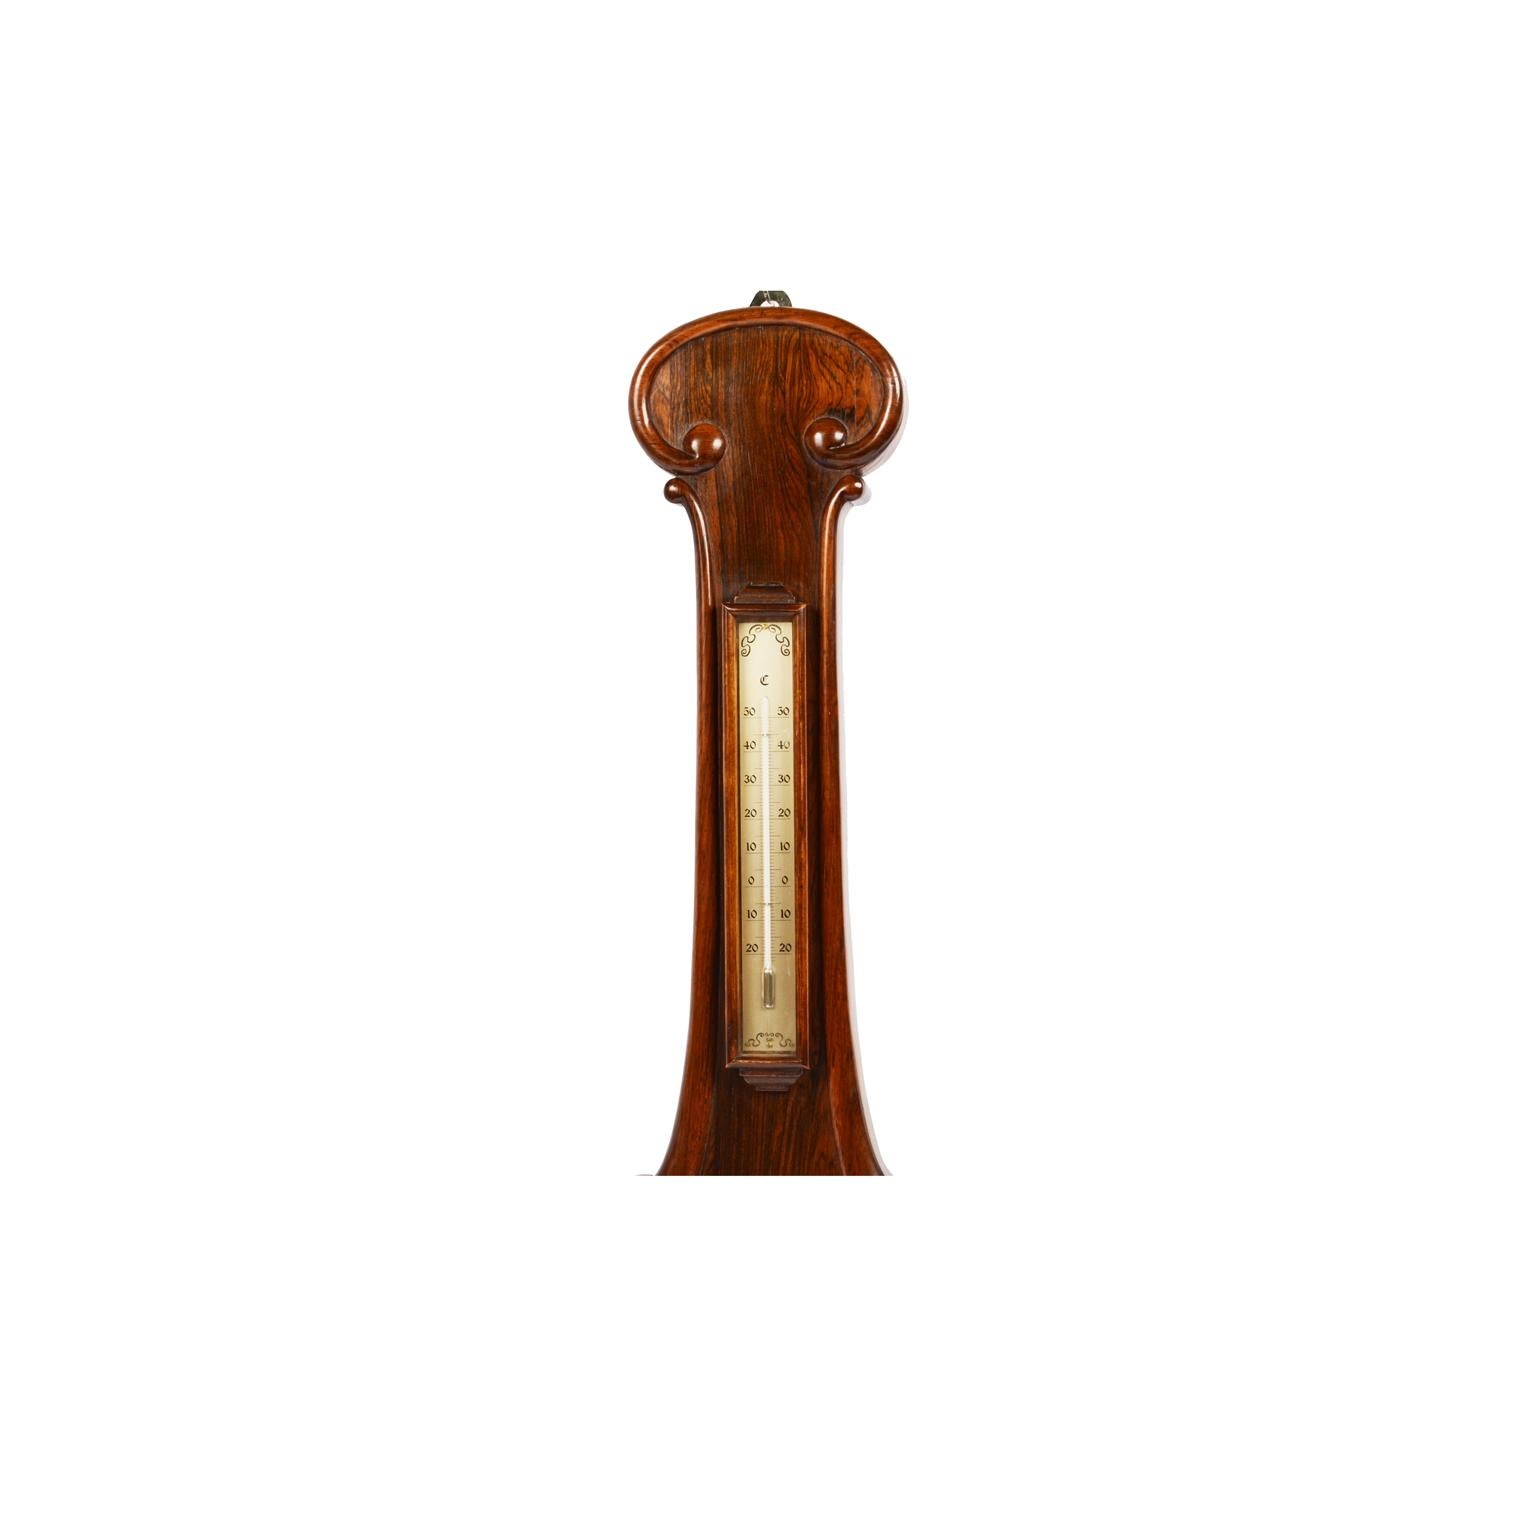 Holzbarometer, signiert Burlinson Ripon, aus der Mitte des 19. Jahrhunderts. Versilbertes Messingzifferblatt mit eingravierten Wetterangaben und dem Namen des Herstellers. Die Ablesung des Barometers wird durch einen doppelten Zeiger angezeigt. Der